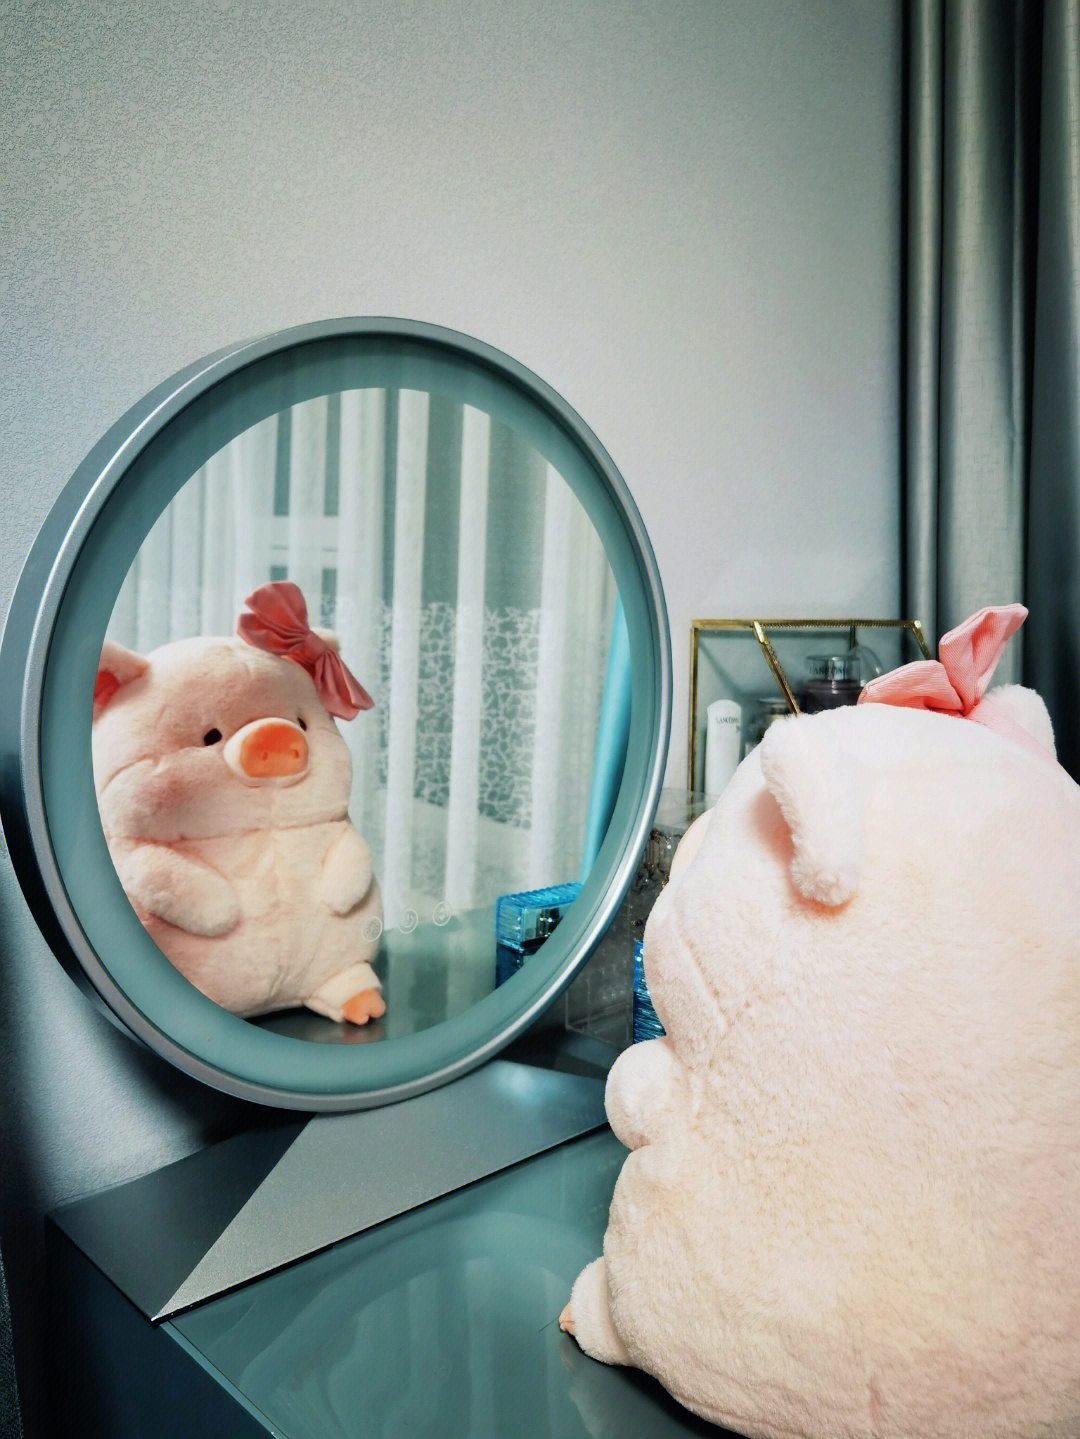 猪照镜子表情包图片